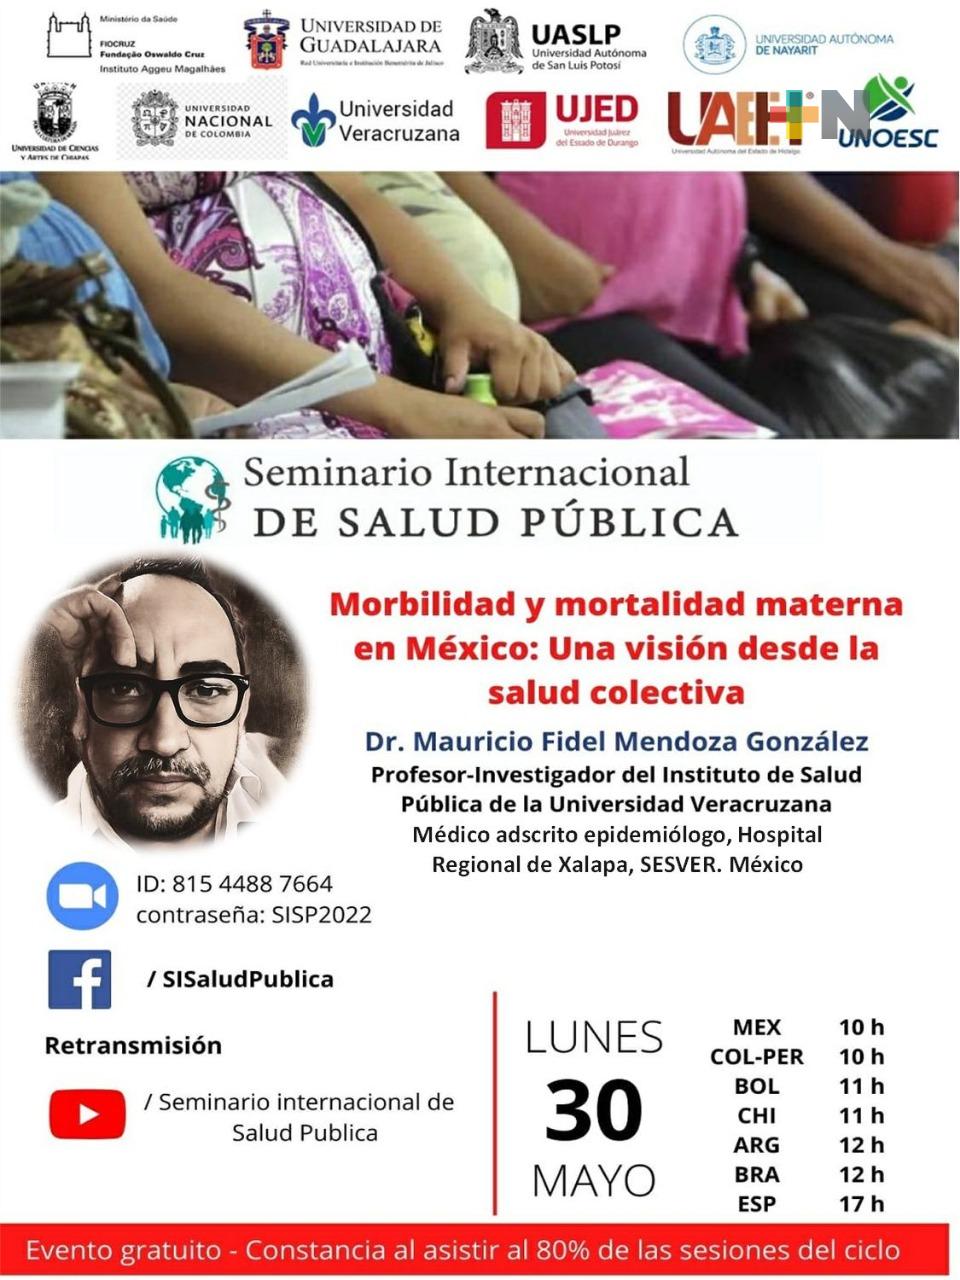 Universidad Veracruzana participa en Seminario Internacional de Salud Pública